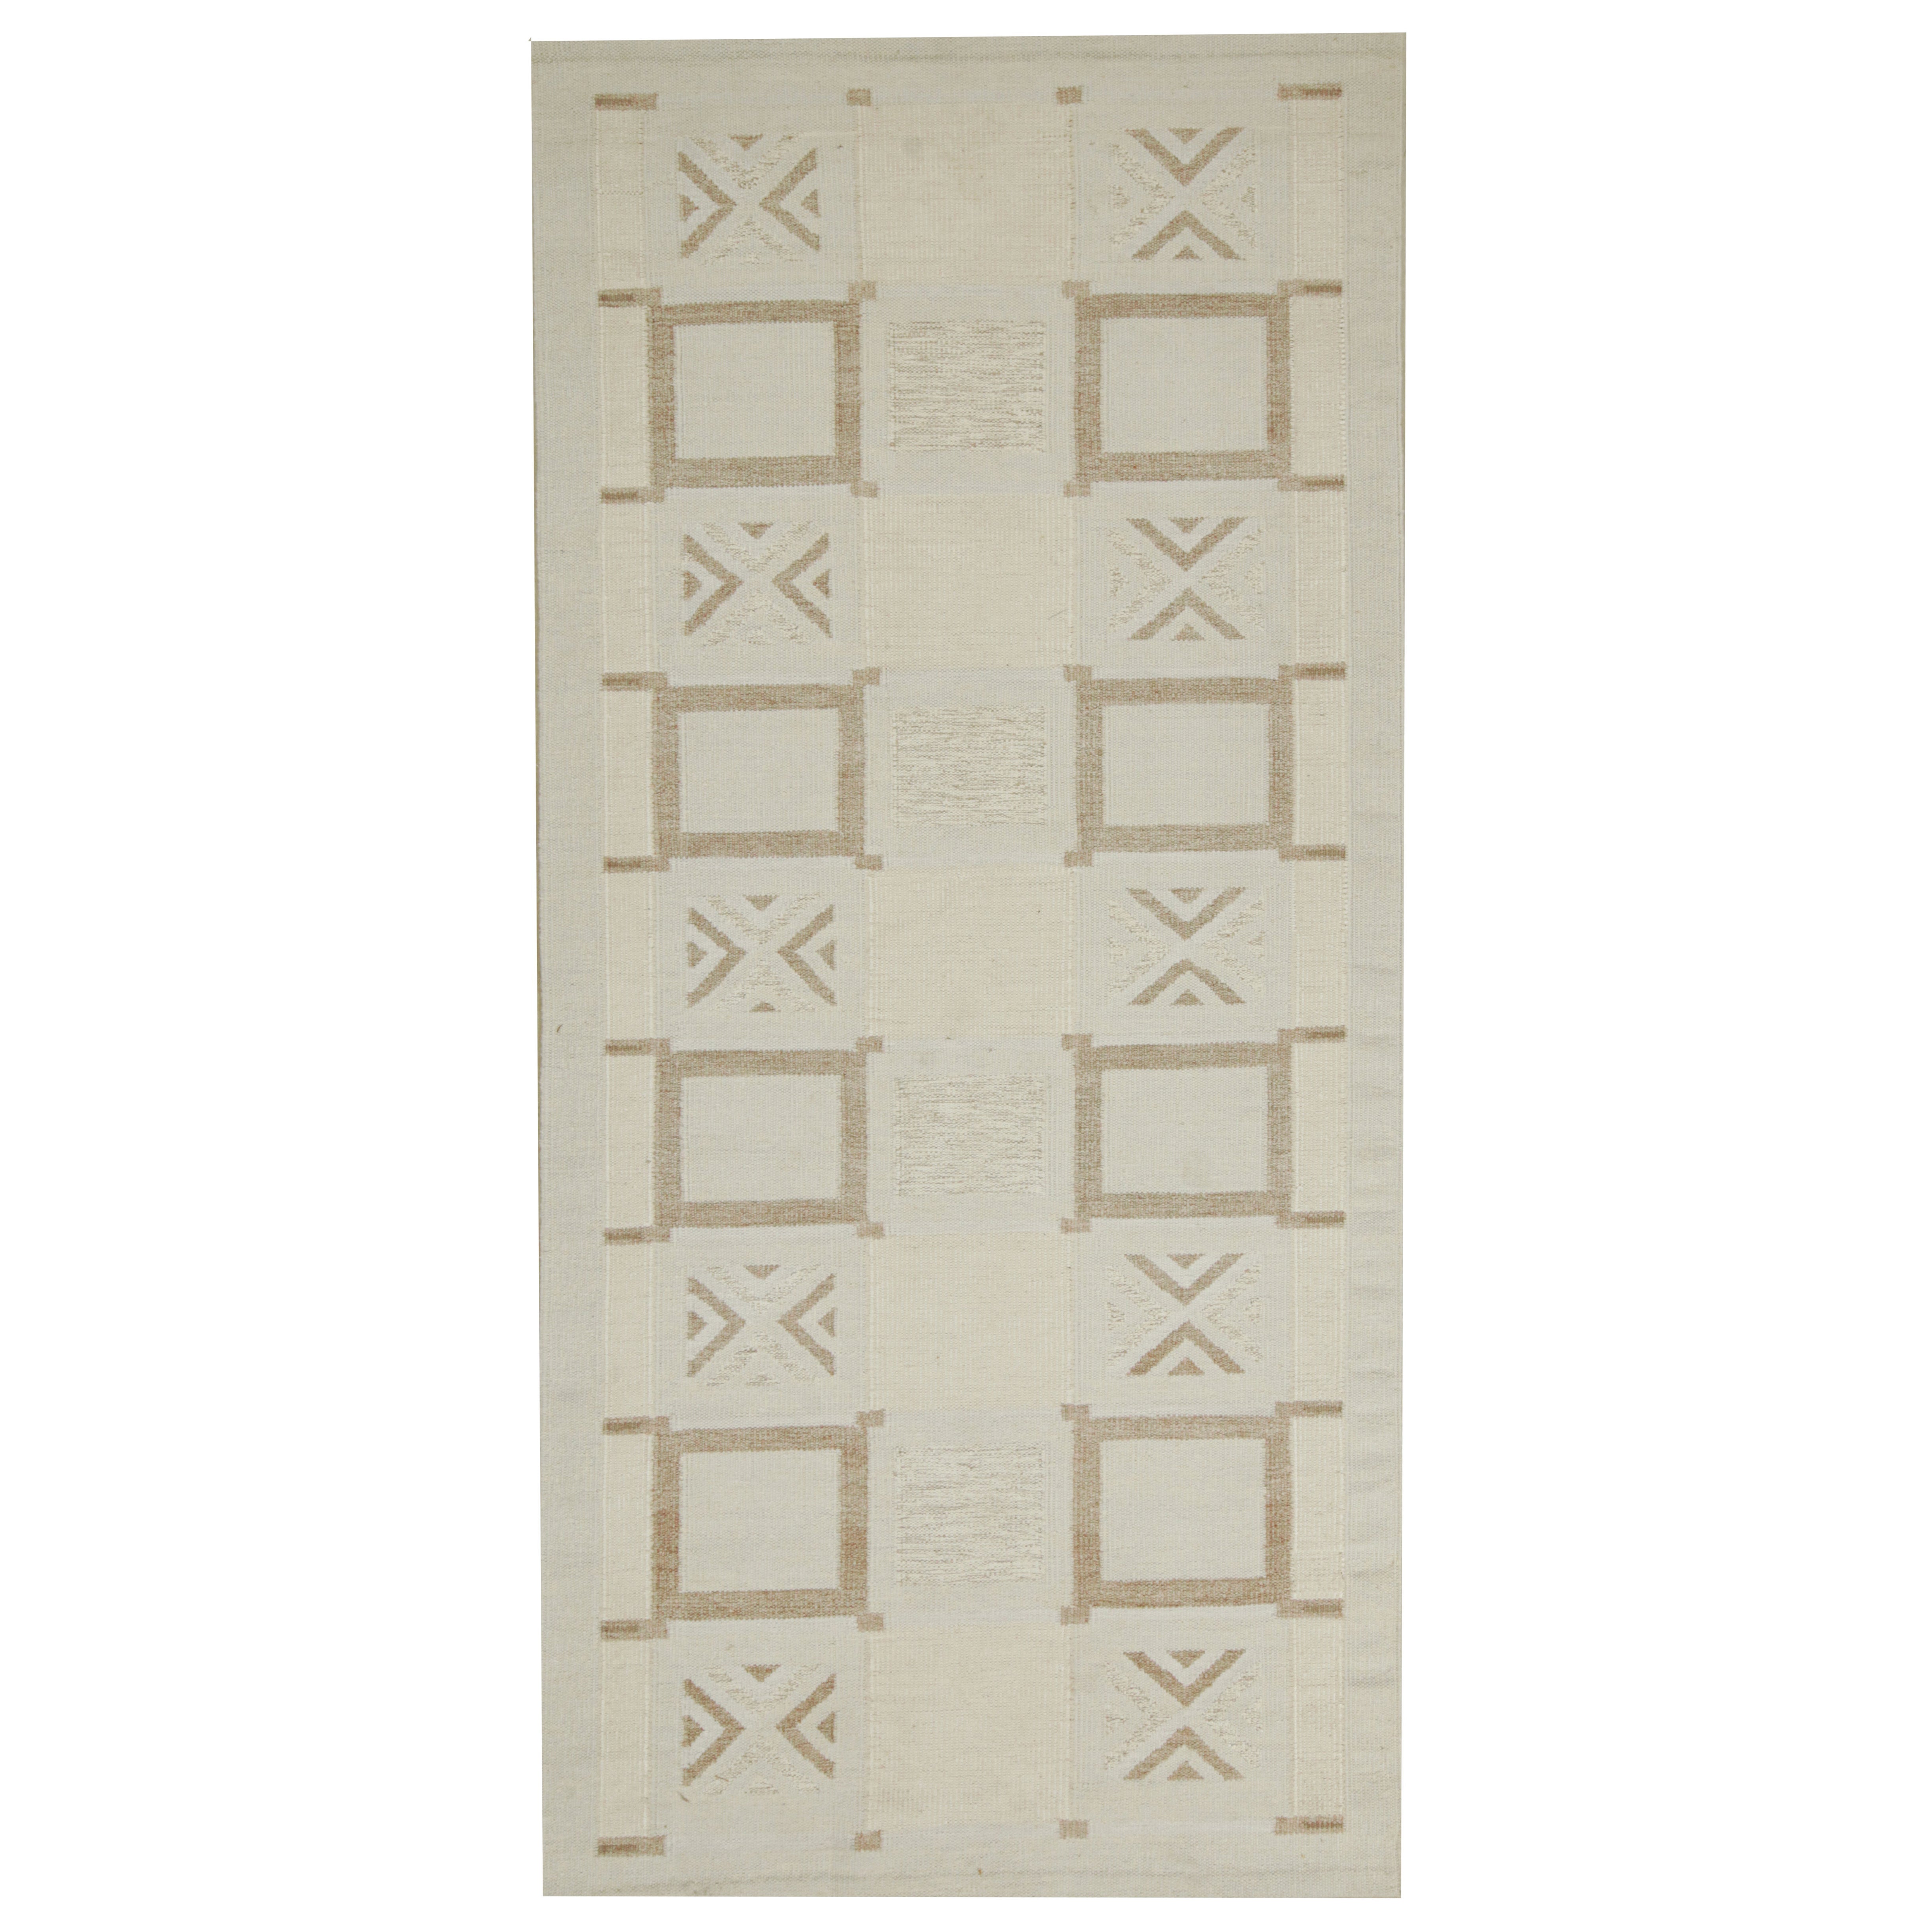 Kilim de style scandinave de Rug & Kilim en motifs géométriques blancs et beige-brun